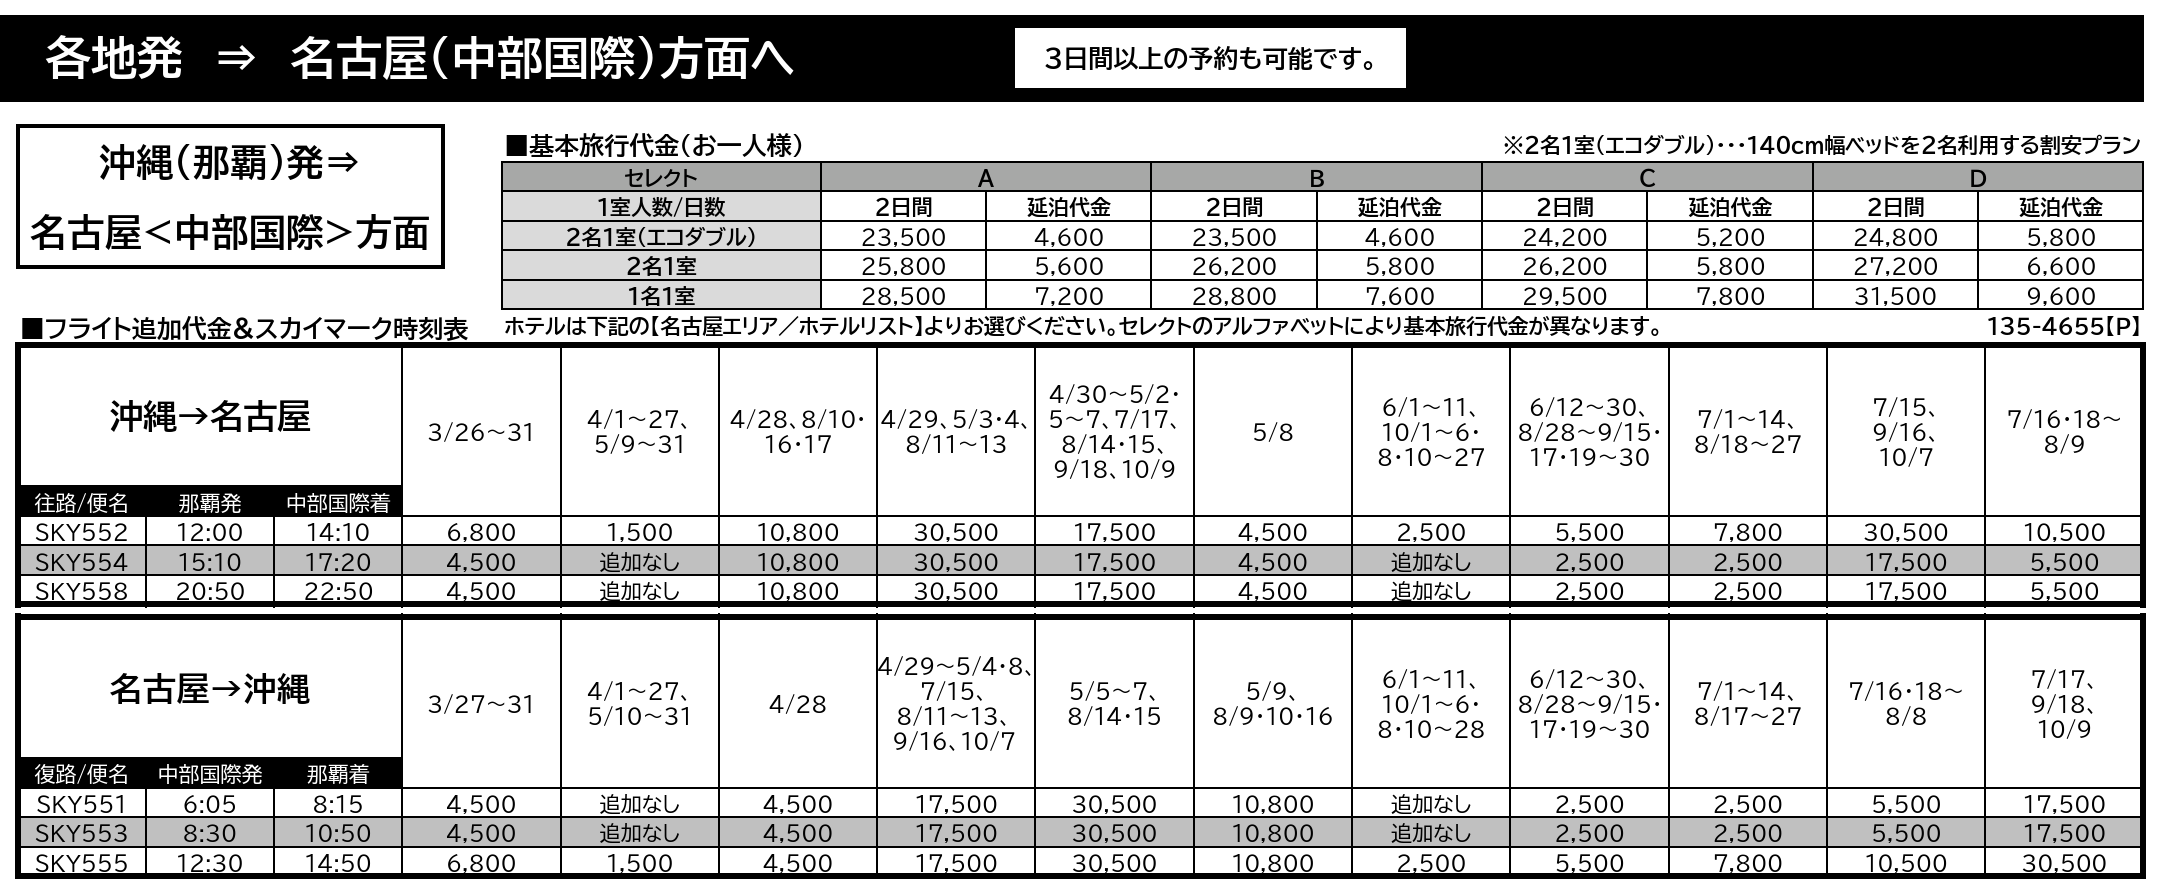 名古屋エリア　「基本旅行代金」と「フライト追加代金＆スカイマーク時刻表」